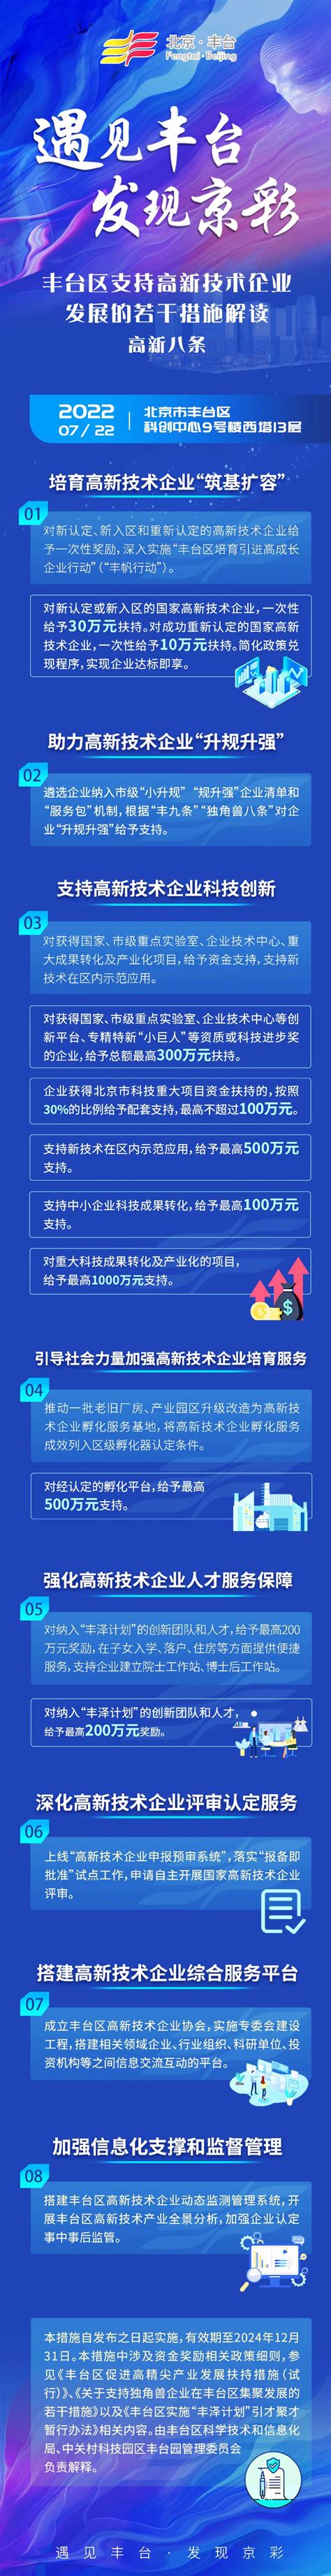 一图读懂丨2021年丰台区政府工作报告-北京市丰台区人民政府网站